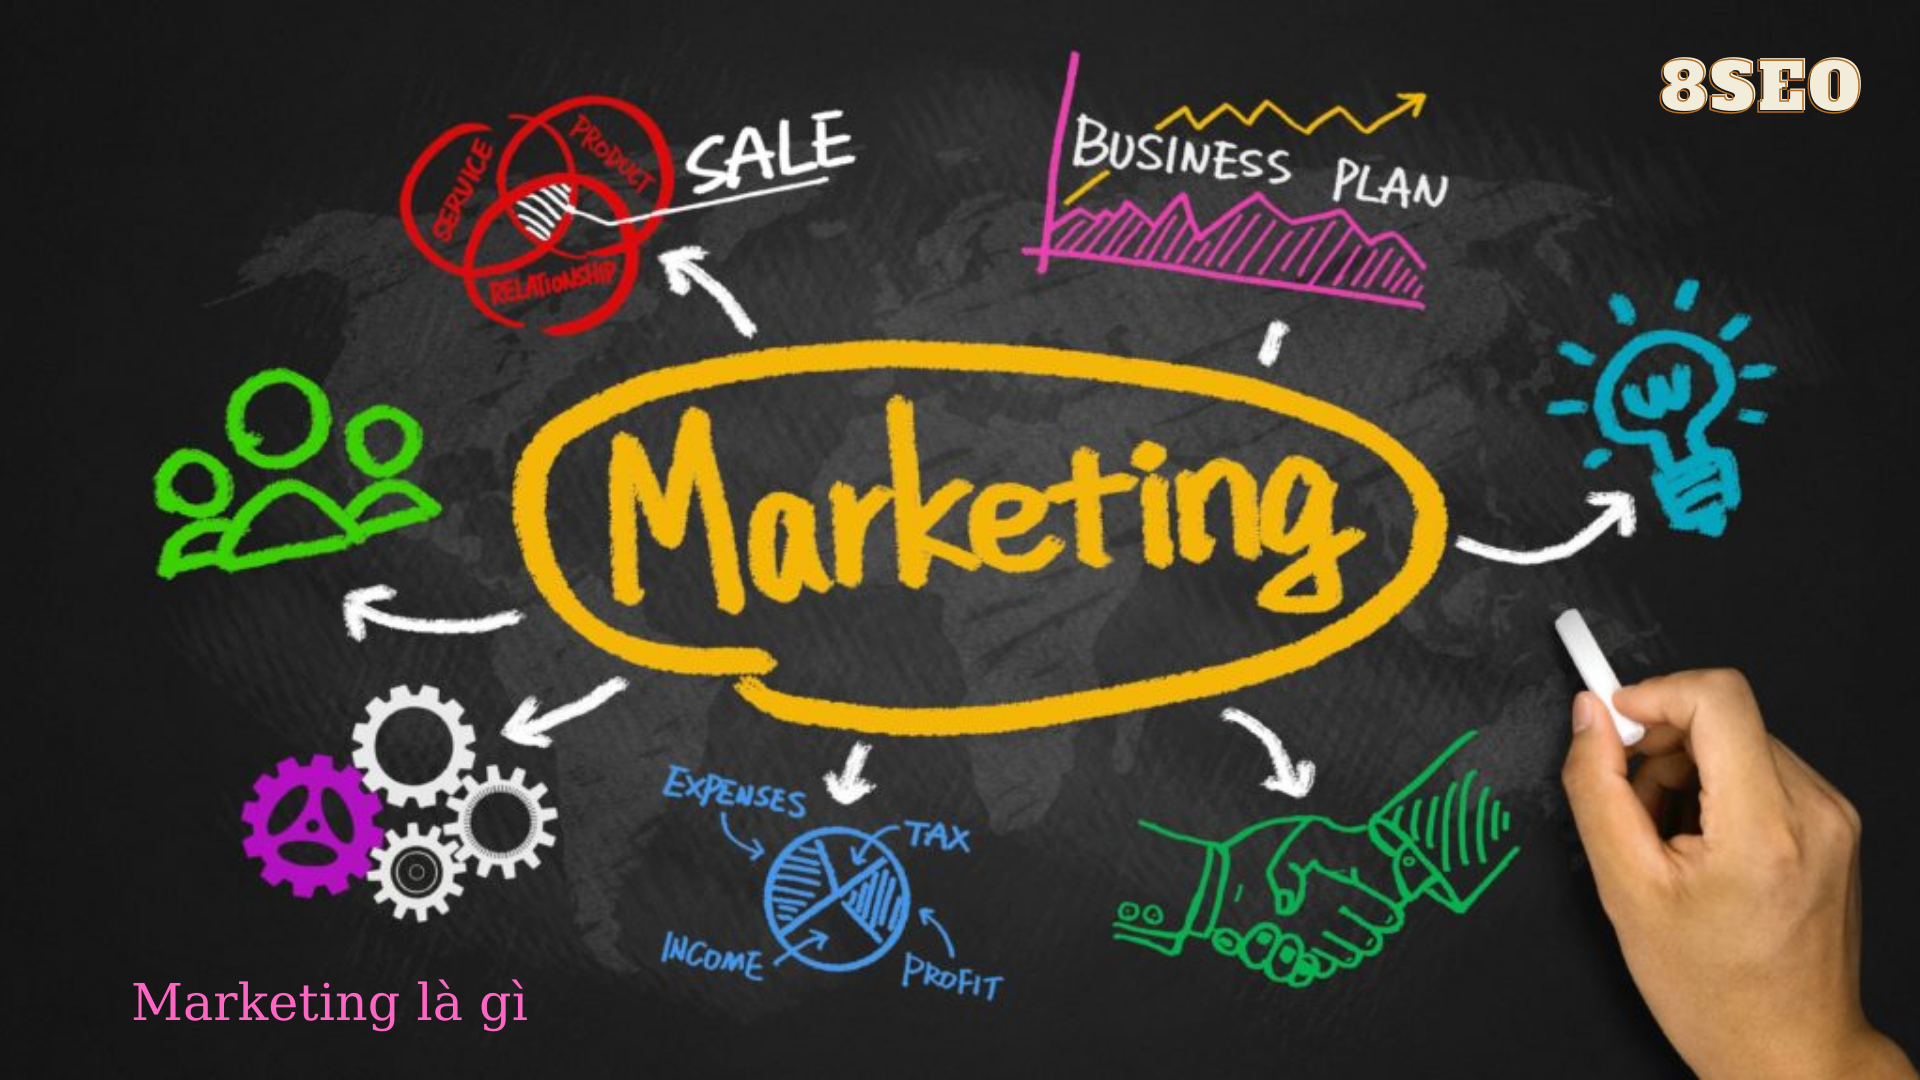 Hướng dẫn cách lập kế hoạch Digital Marketing chi tiết nhất